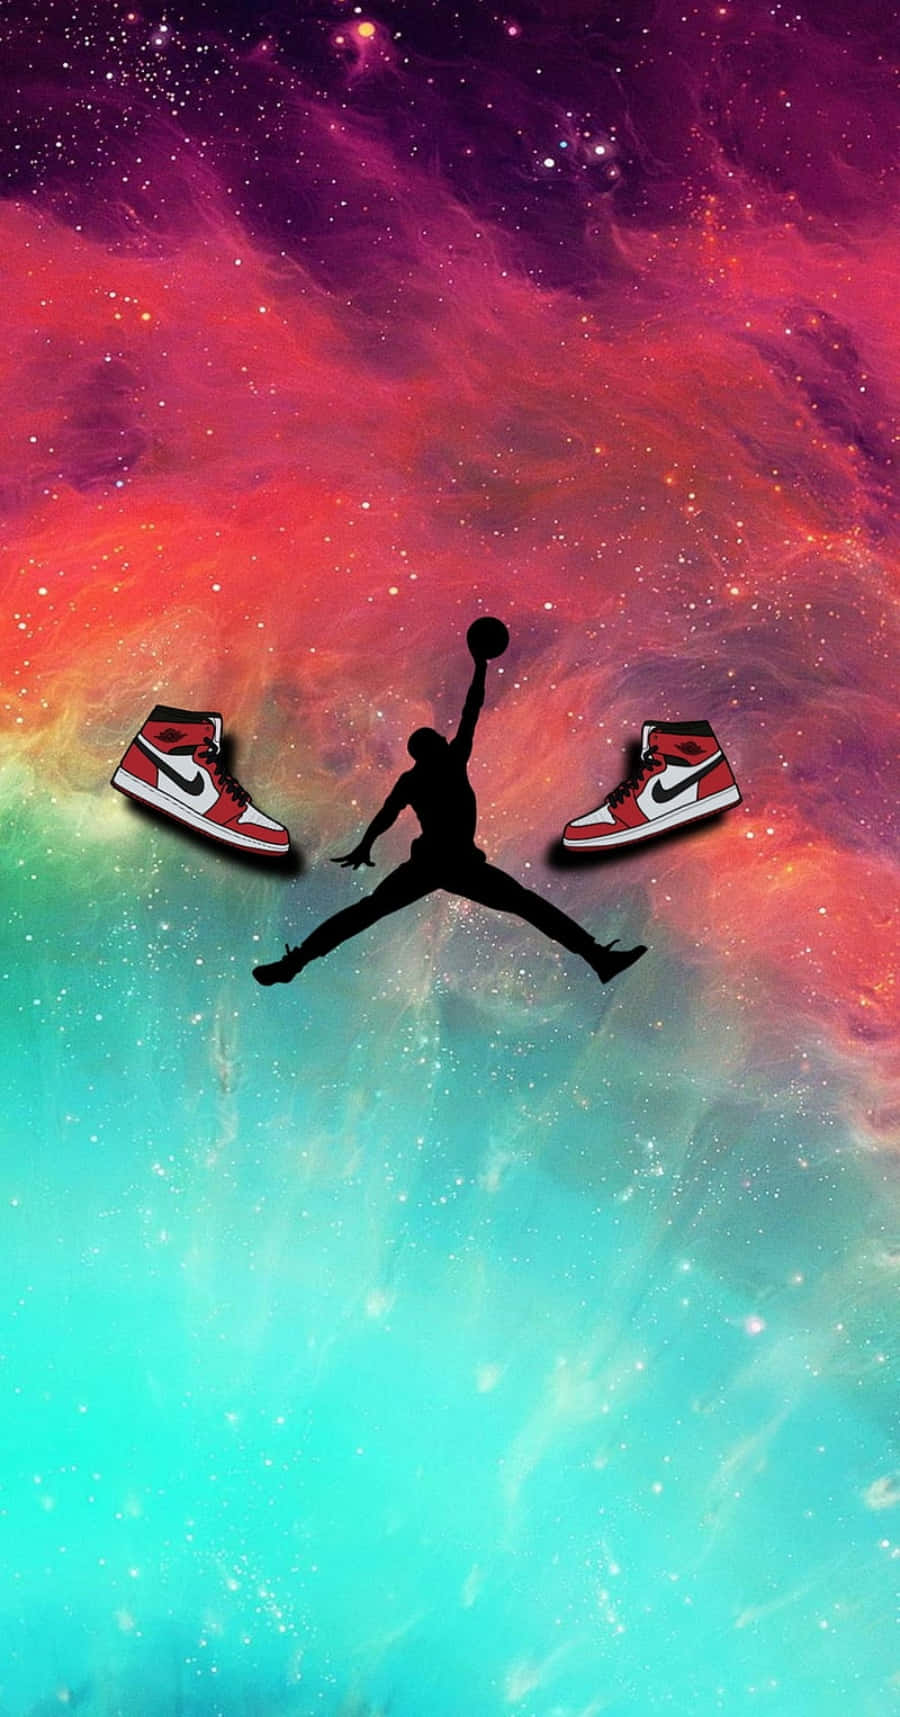 NikeAir Jordan Galaxy (auf Deutsch: Nike Air Jordan Galaxie) Wallpaper